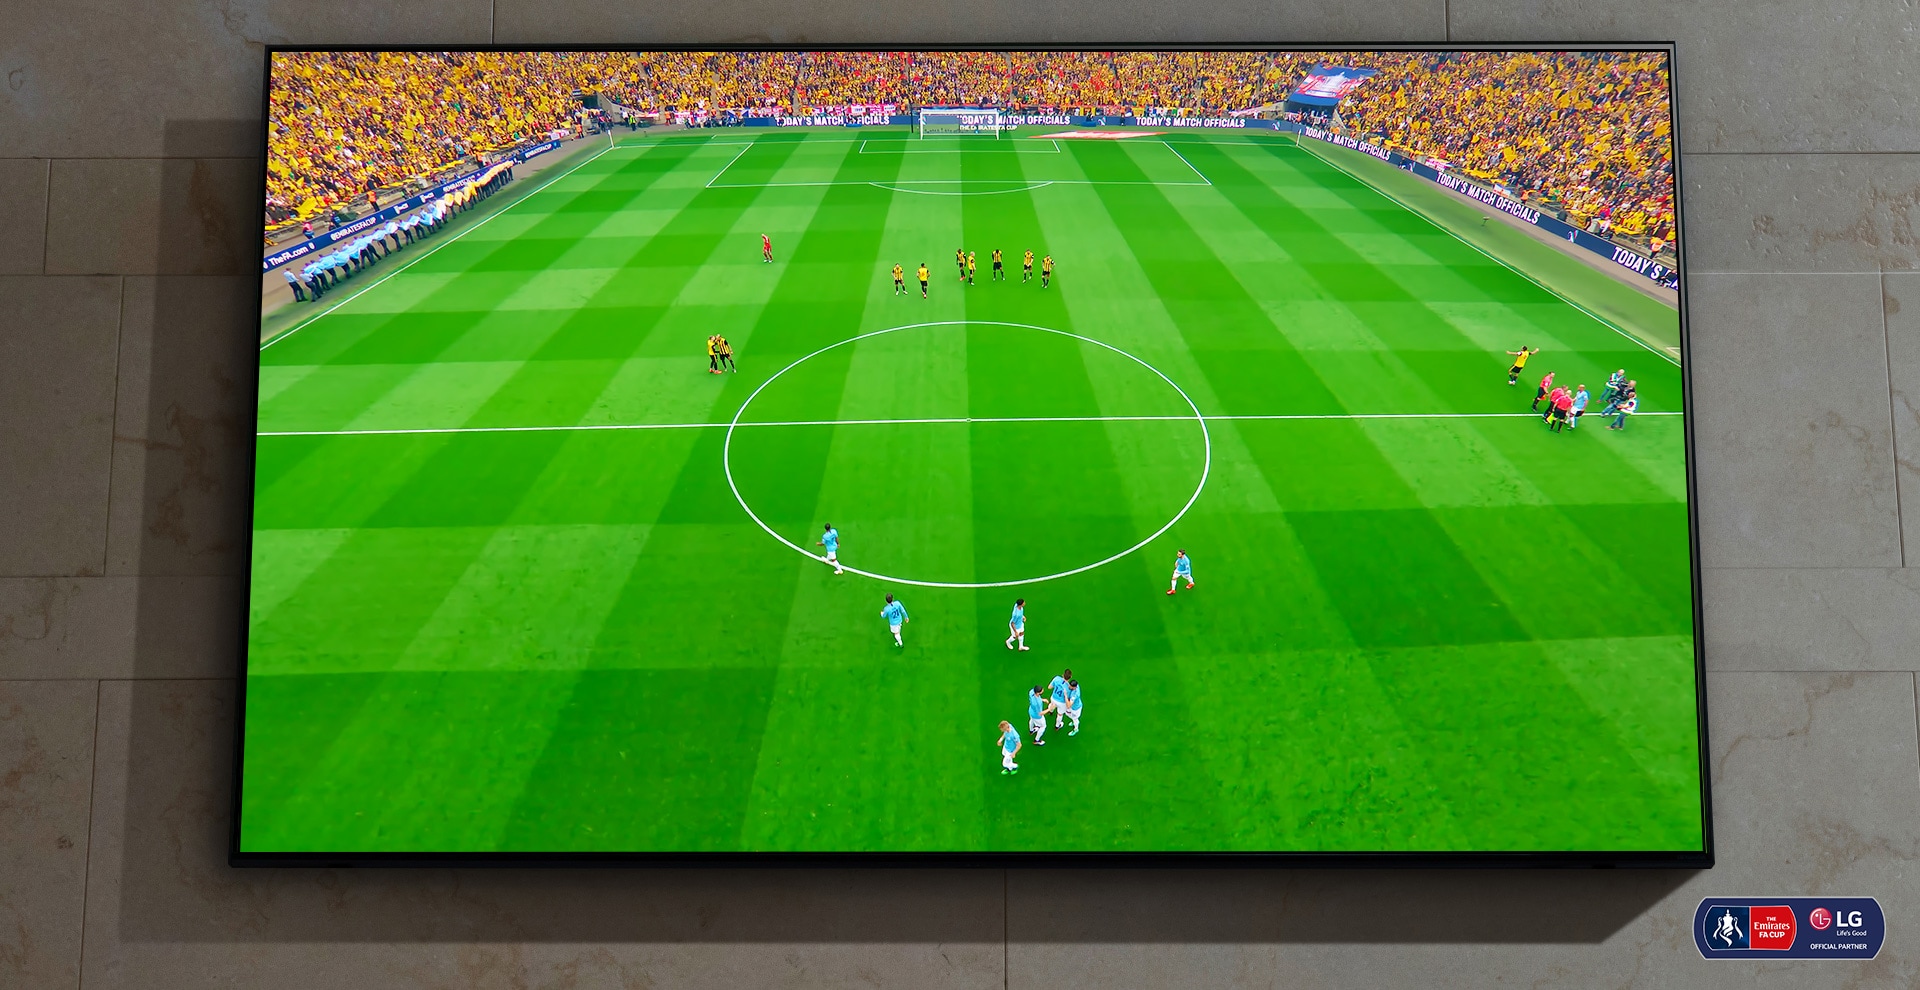 טלוויזיית NanoCell תלויה על קיר. על המסך, משחק כדורגל עומד להתחיל.